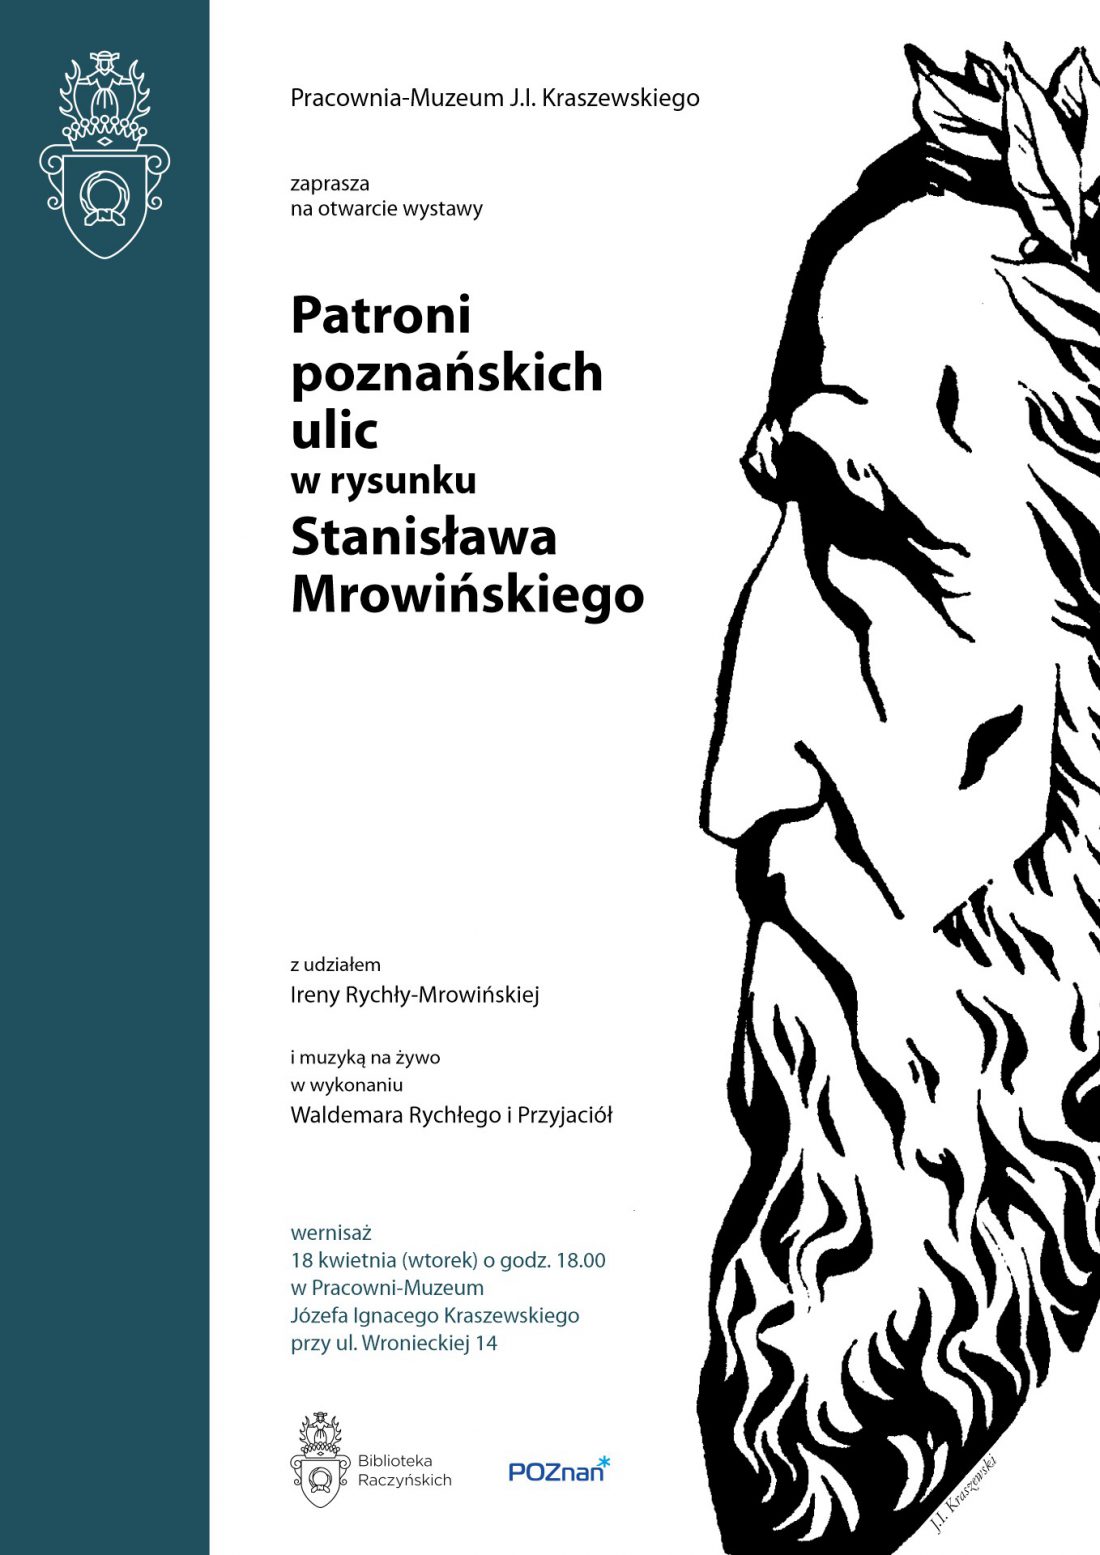 Na plakacie widnieje czarno-biała rycina profilu Józefa Ignacego Kraszewskiego, z długą brodą, wydatnym nosem i liśćmi lauru